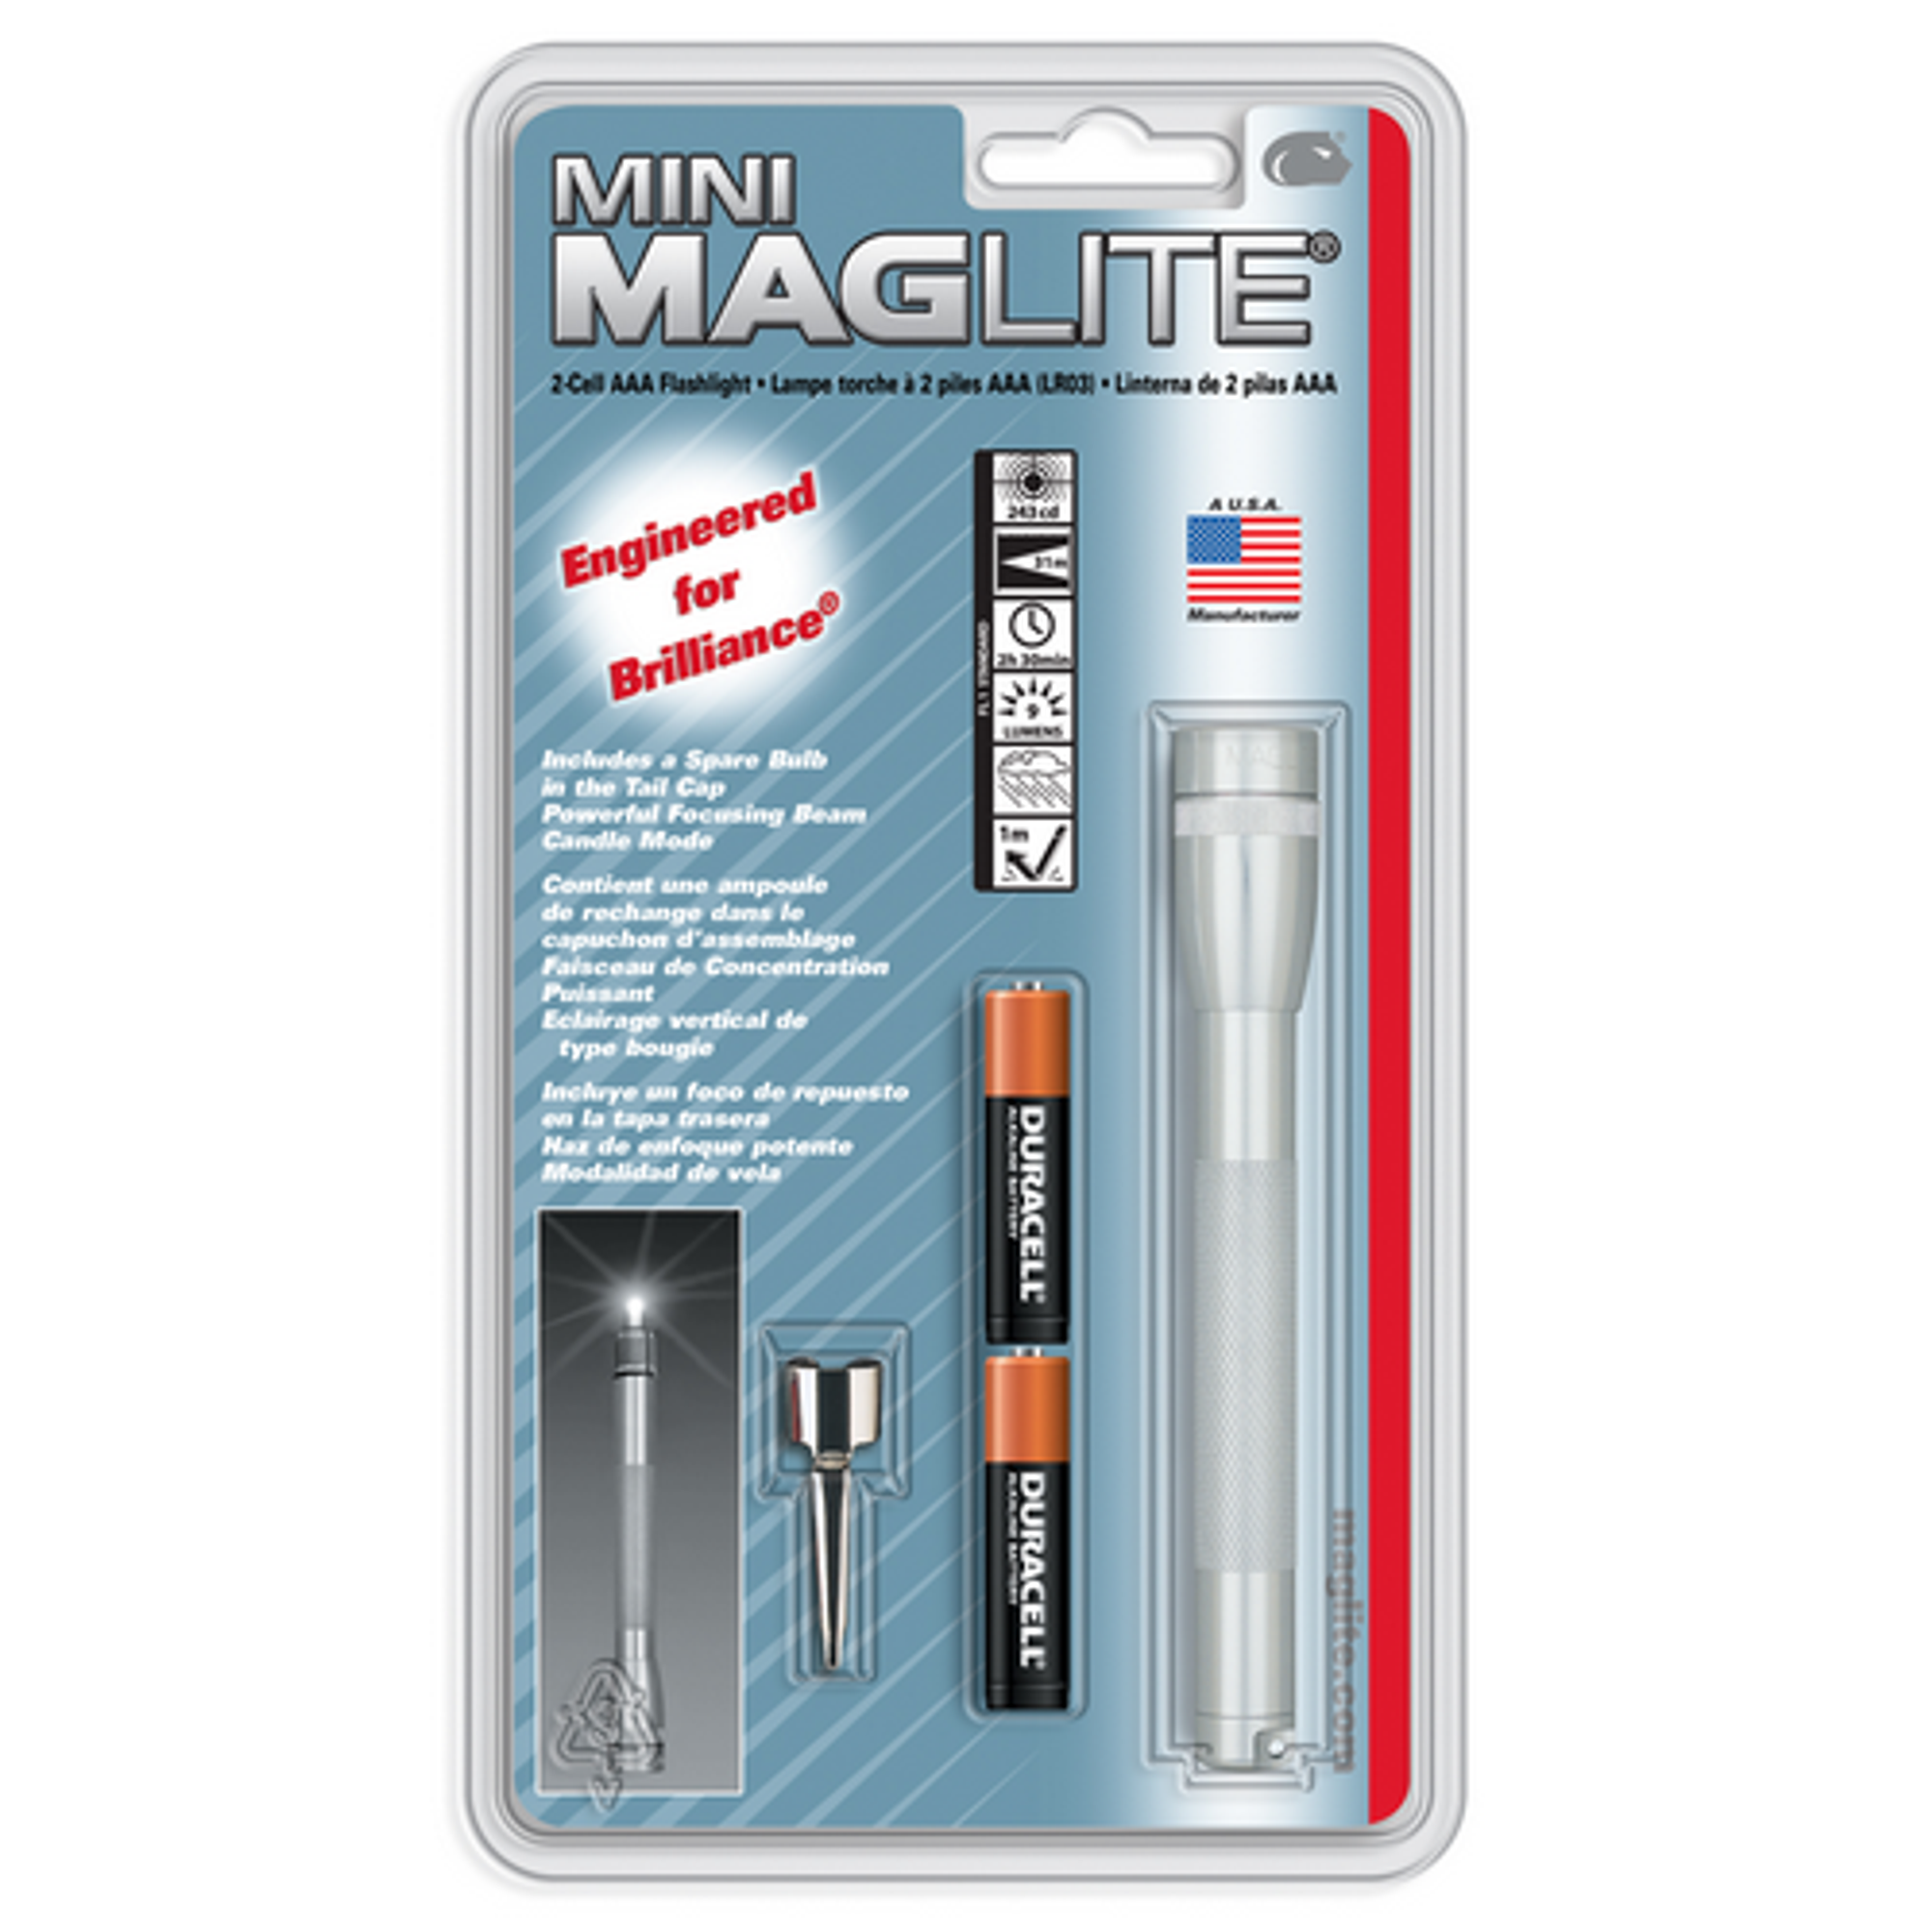 Mini Maglite 2 Aaa-cell Flashlight W/ Pocket Clip